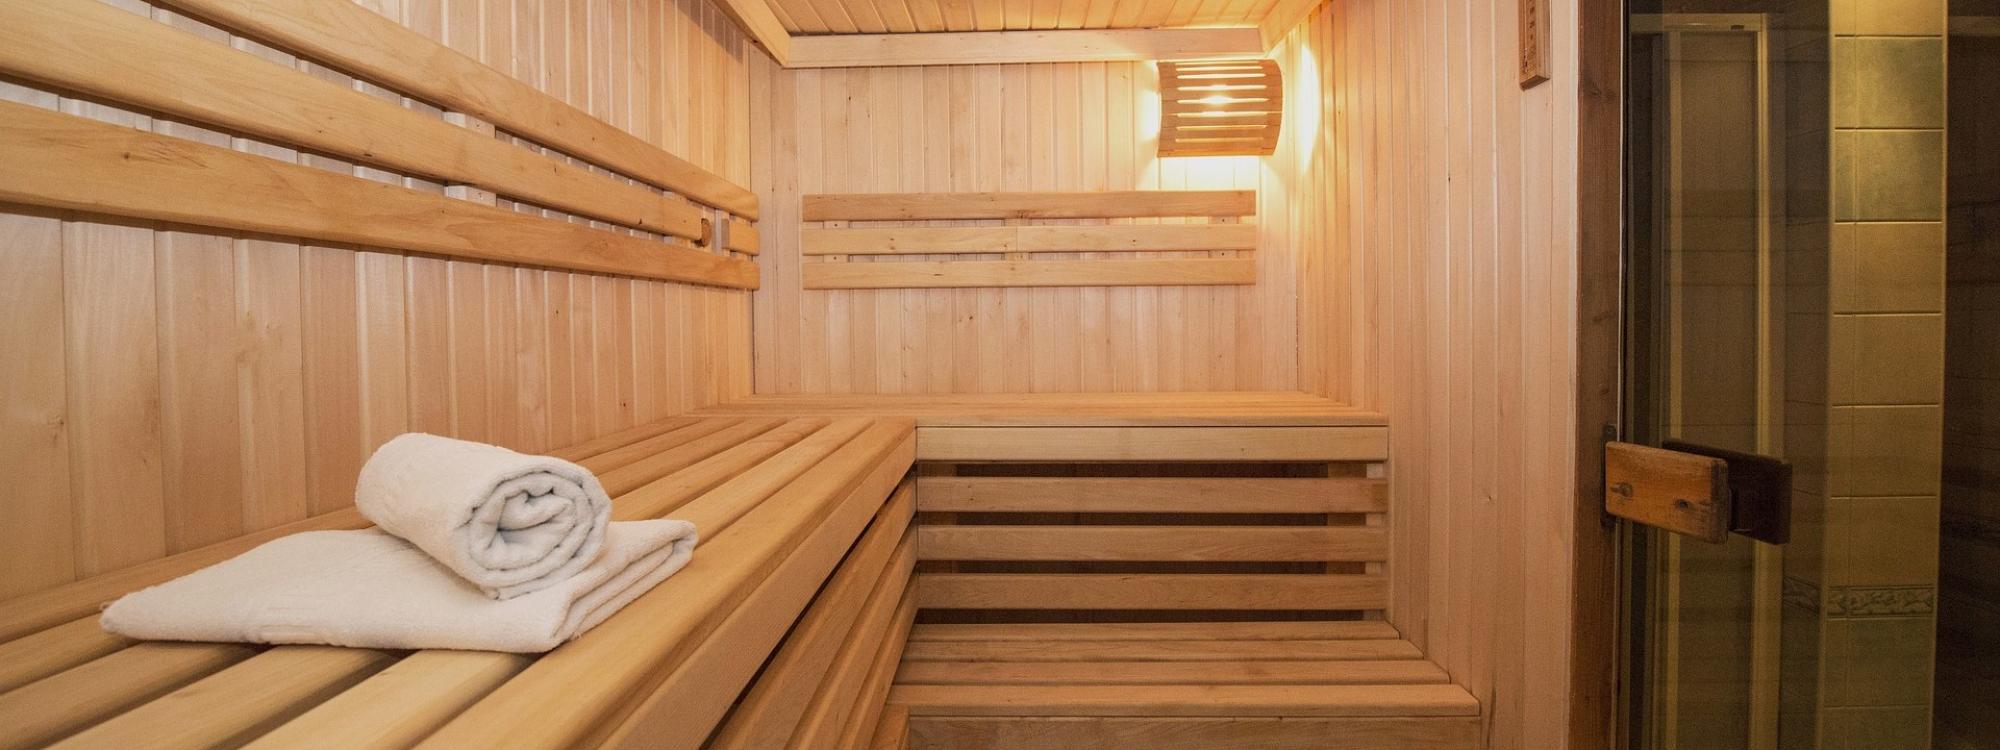 Jakou saunu do domu? Finská sauna, infra sauna a další